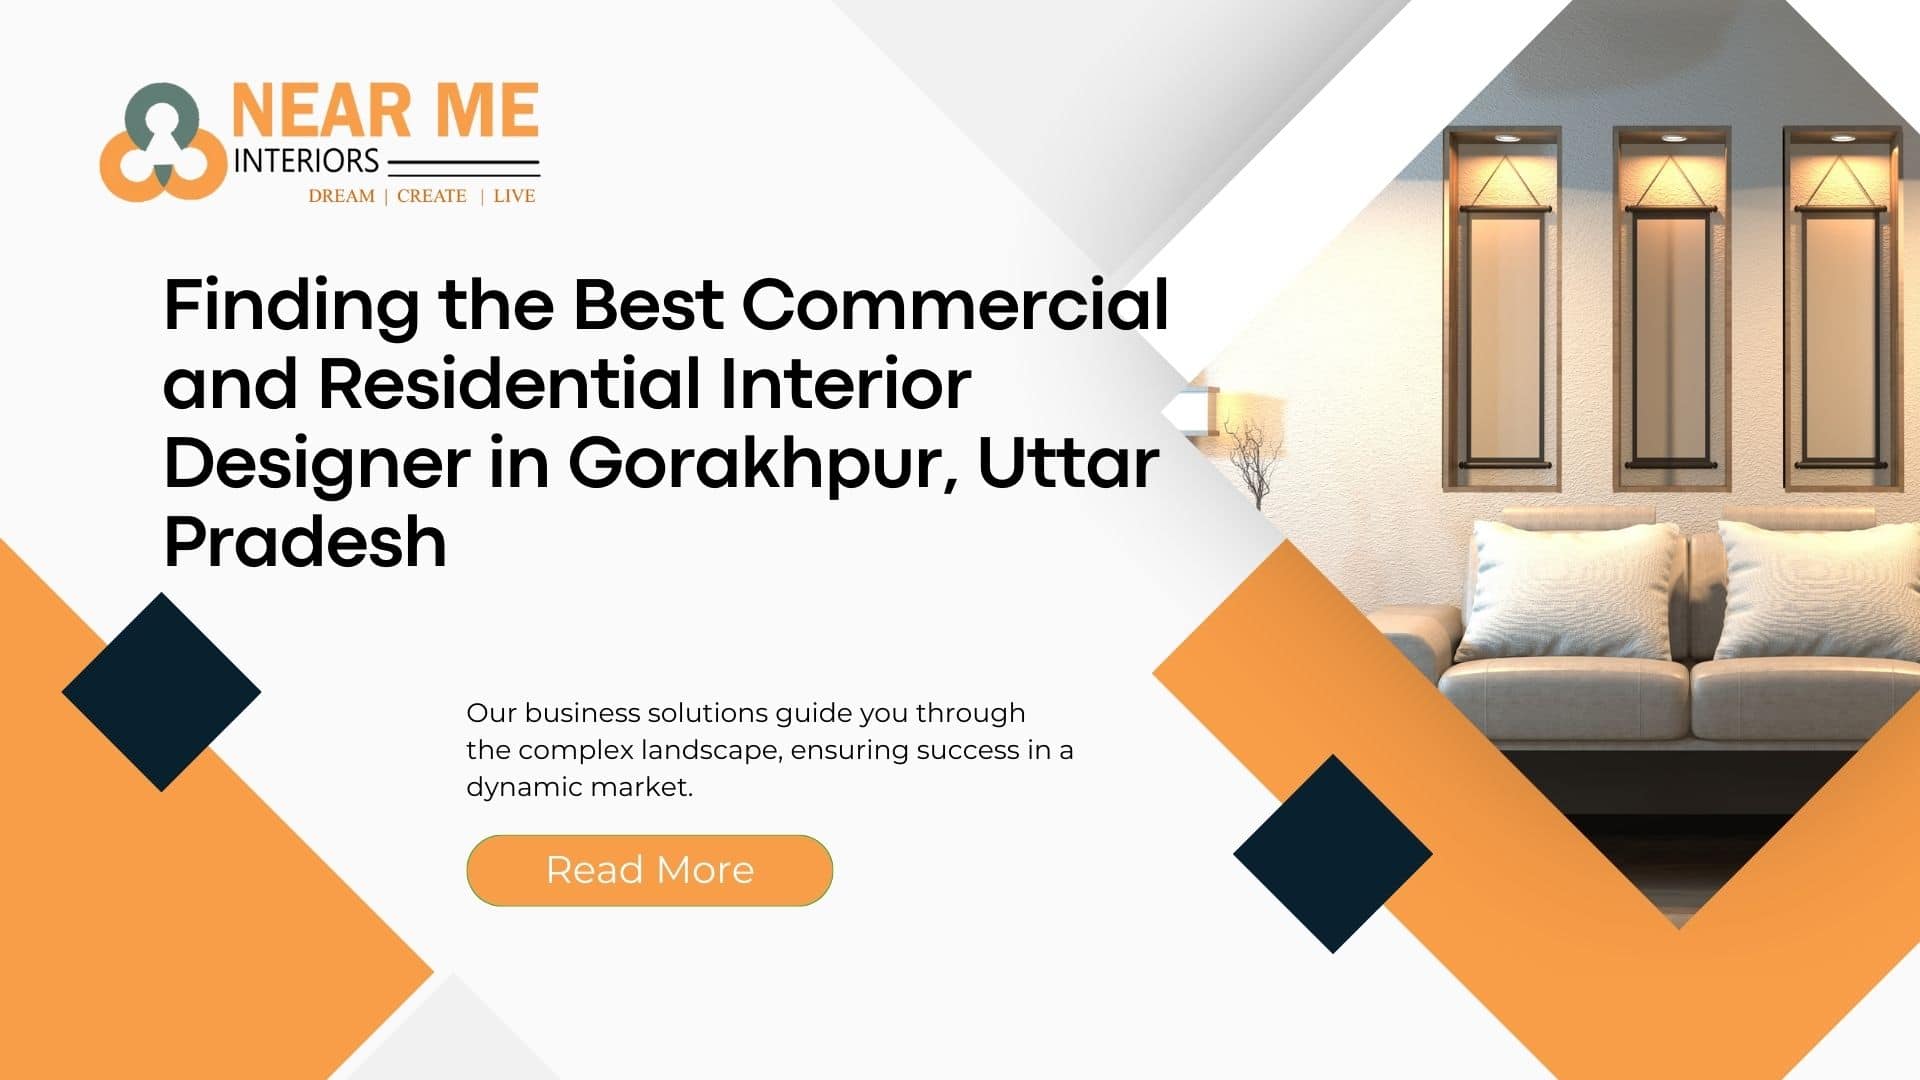 Finding the Best Commercial and Residential Interior Designer in Gorakhpur, Uttar Pradesh